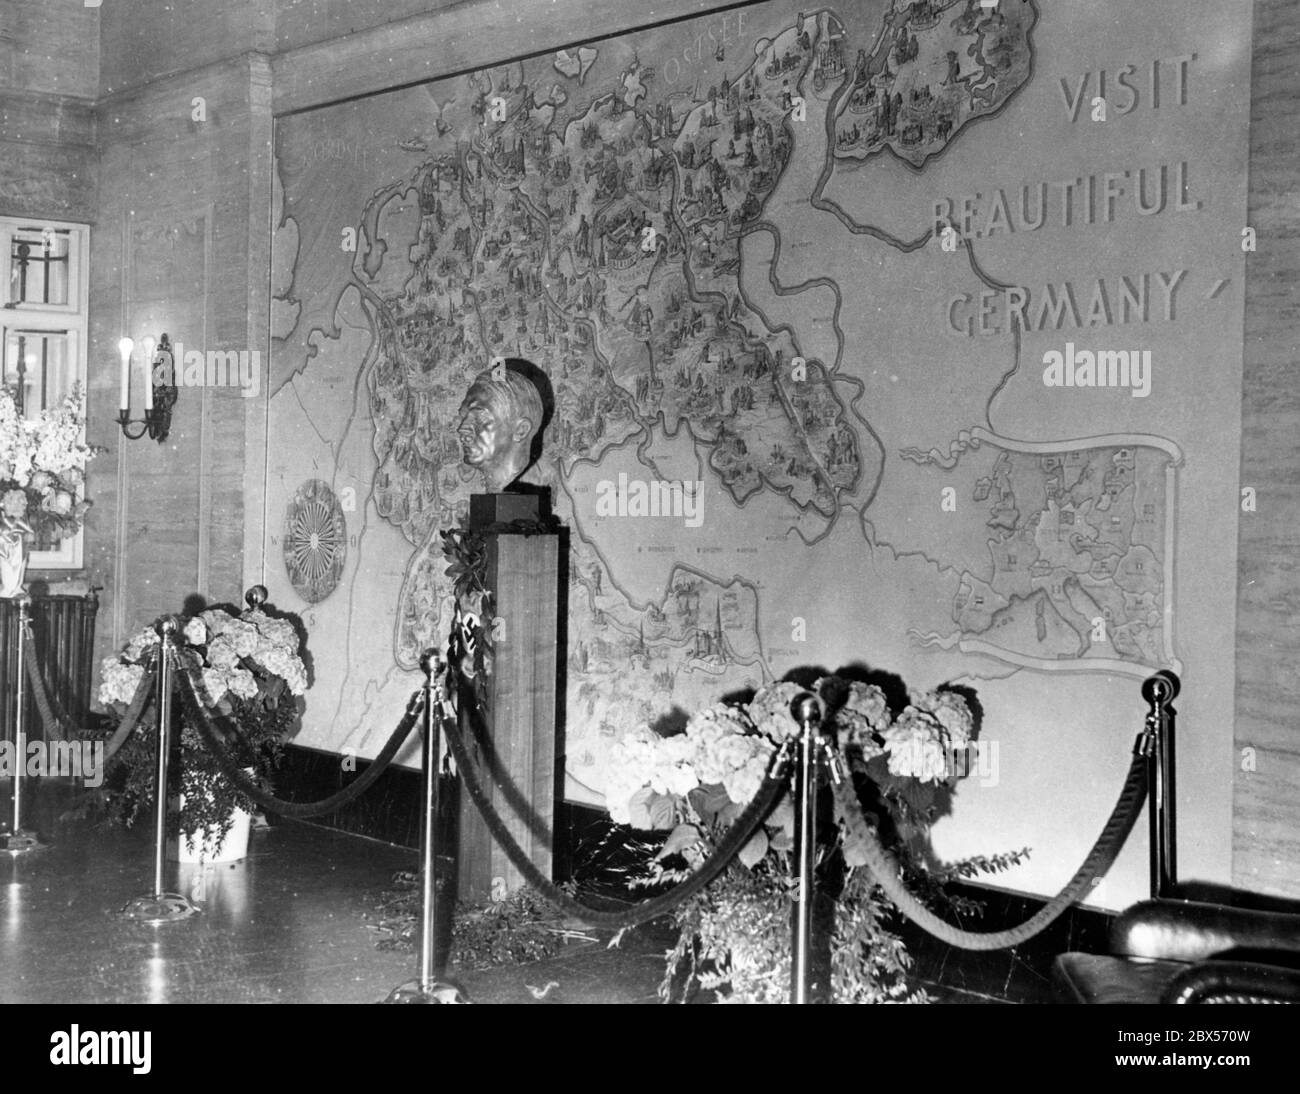 Une agence de voyages du Reich allemand est ouverte à New York par une cérémonie de fête. Ici, dans la salle du Deutsche Reichsbahn se trouve une grande carte murale du Reich (entre une boussole rose à gauche et une petite carte de l'Europe à droite) et un buste d'Adolf Hitler. Sur la carte, il y a l'invitation 'visiter la belle Allemagne'. Banque D'Images